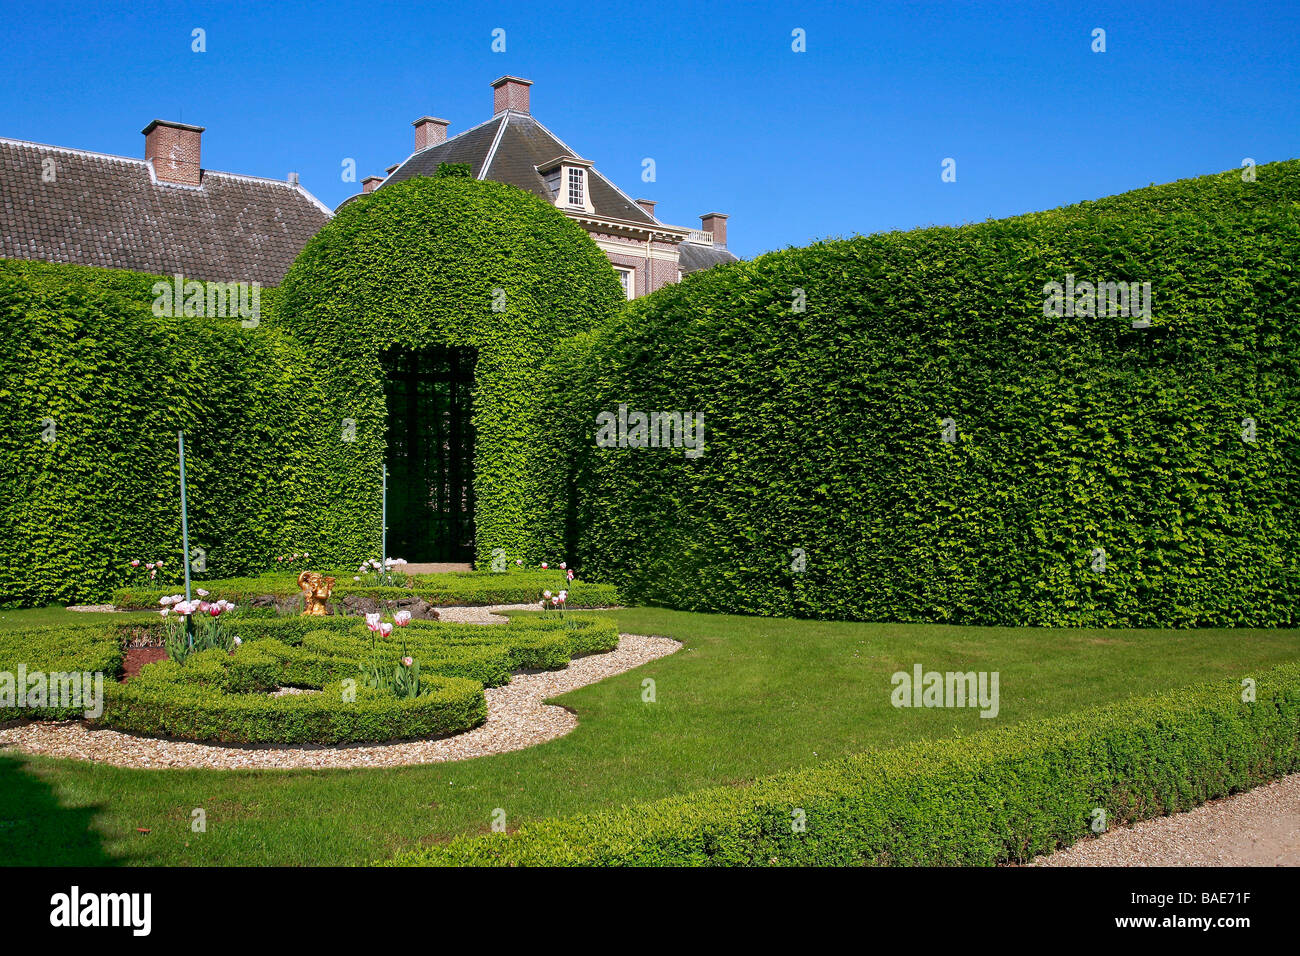 Vegetal Gallery of Carpinus, The Queen's Garden, Paleis Het Loo, Apeldoorn, Holland, Europe Stock Photo